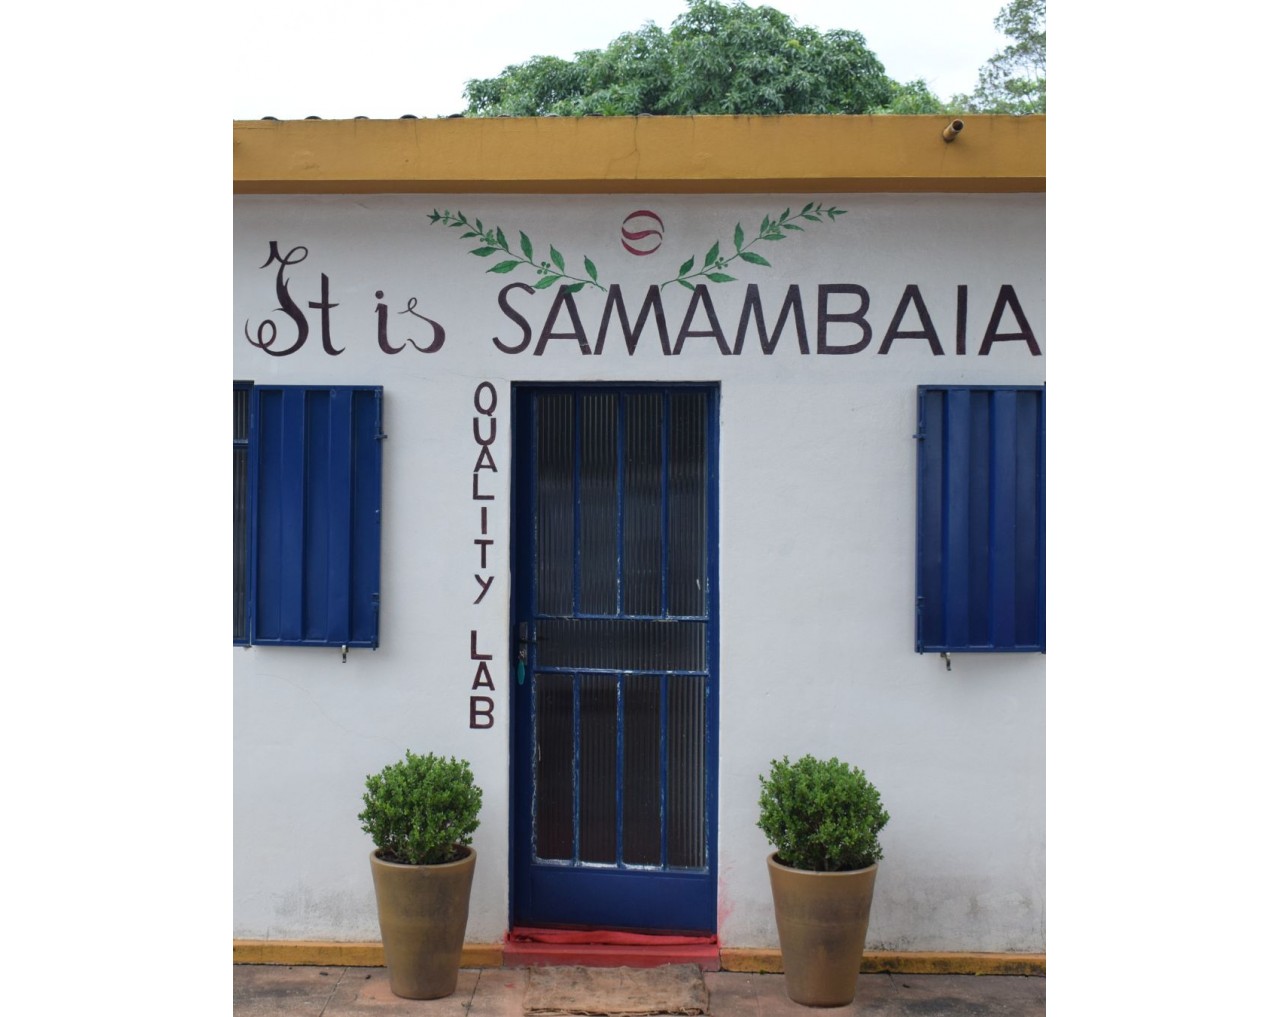 Fazenda Samambaia / Catigua - Brazil